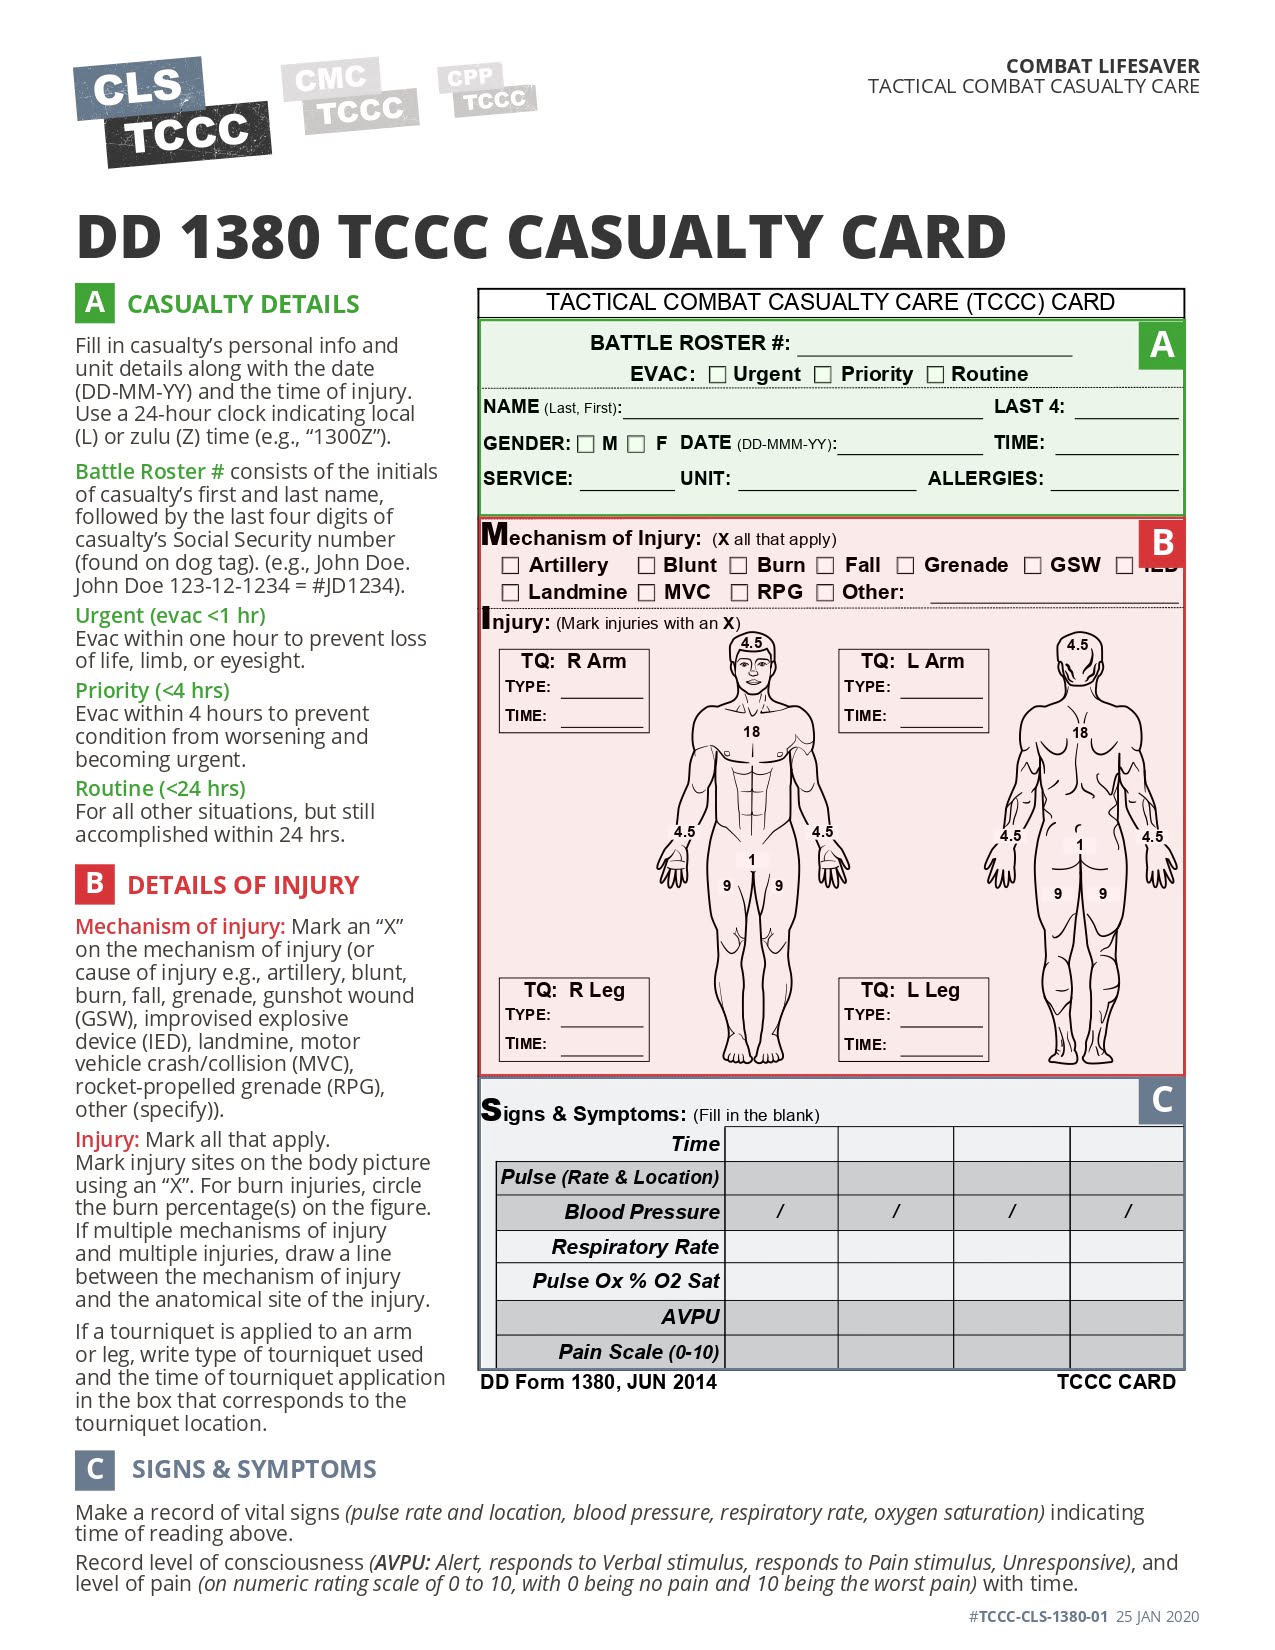 DD Form 1380 TCCC Card, page 1